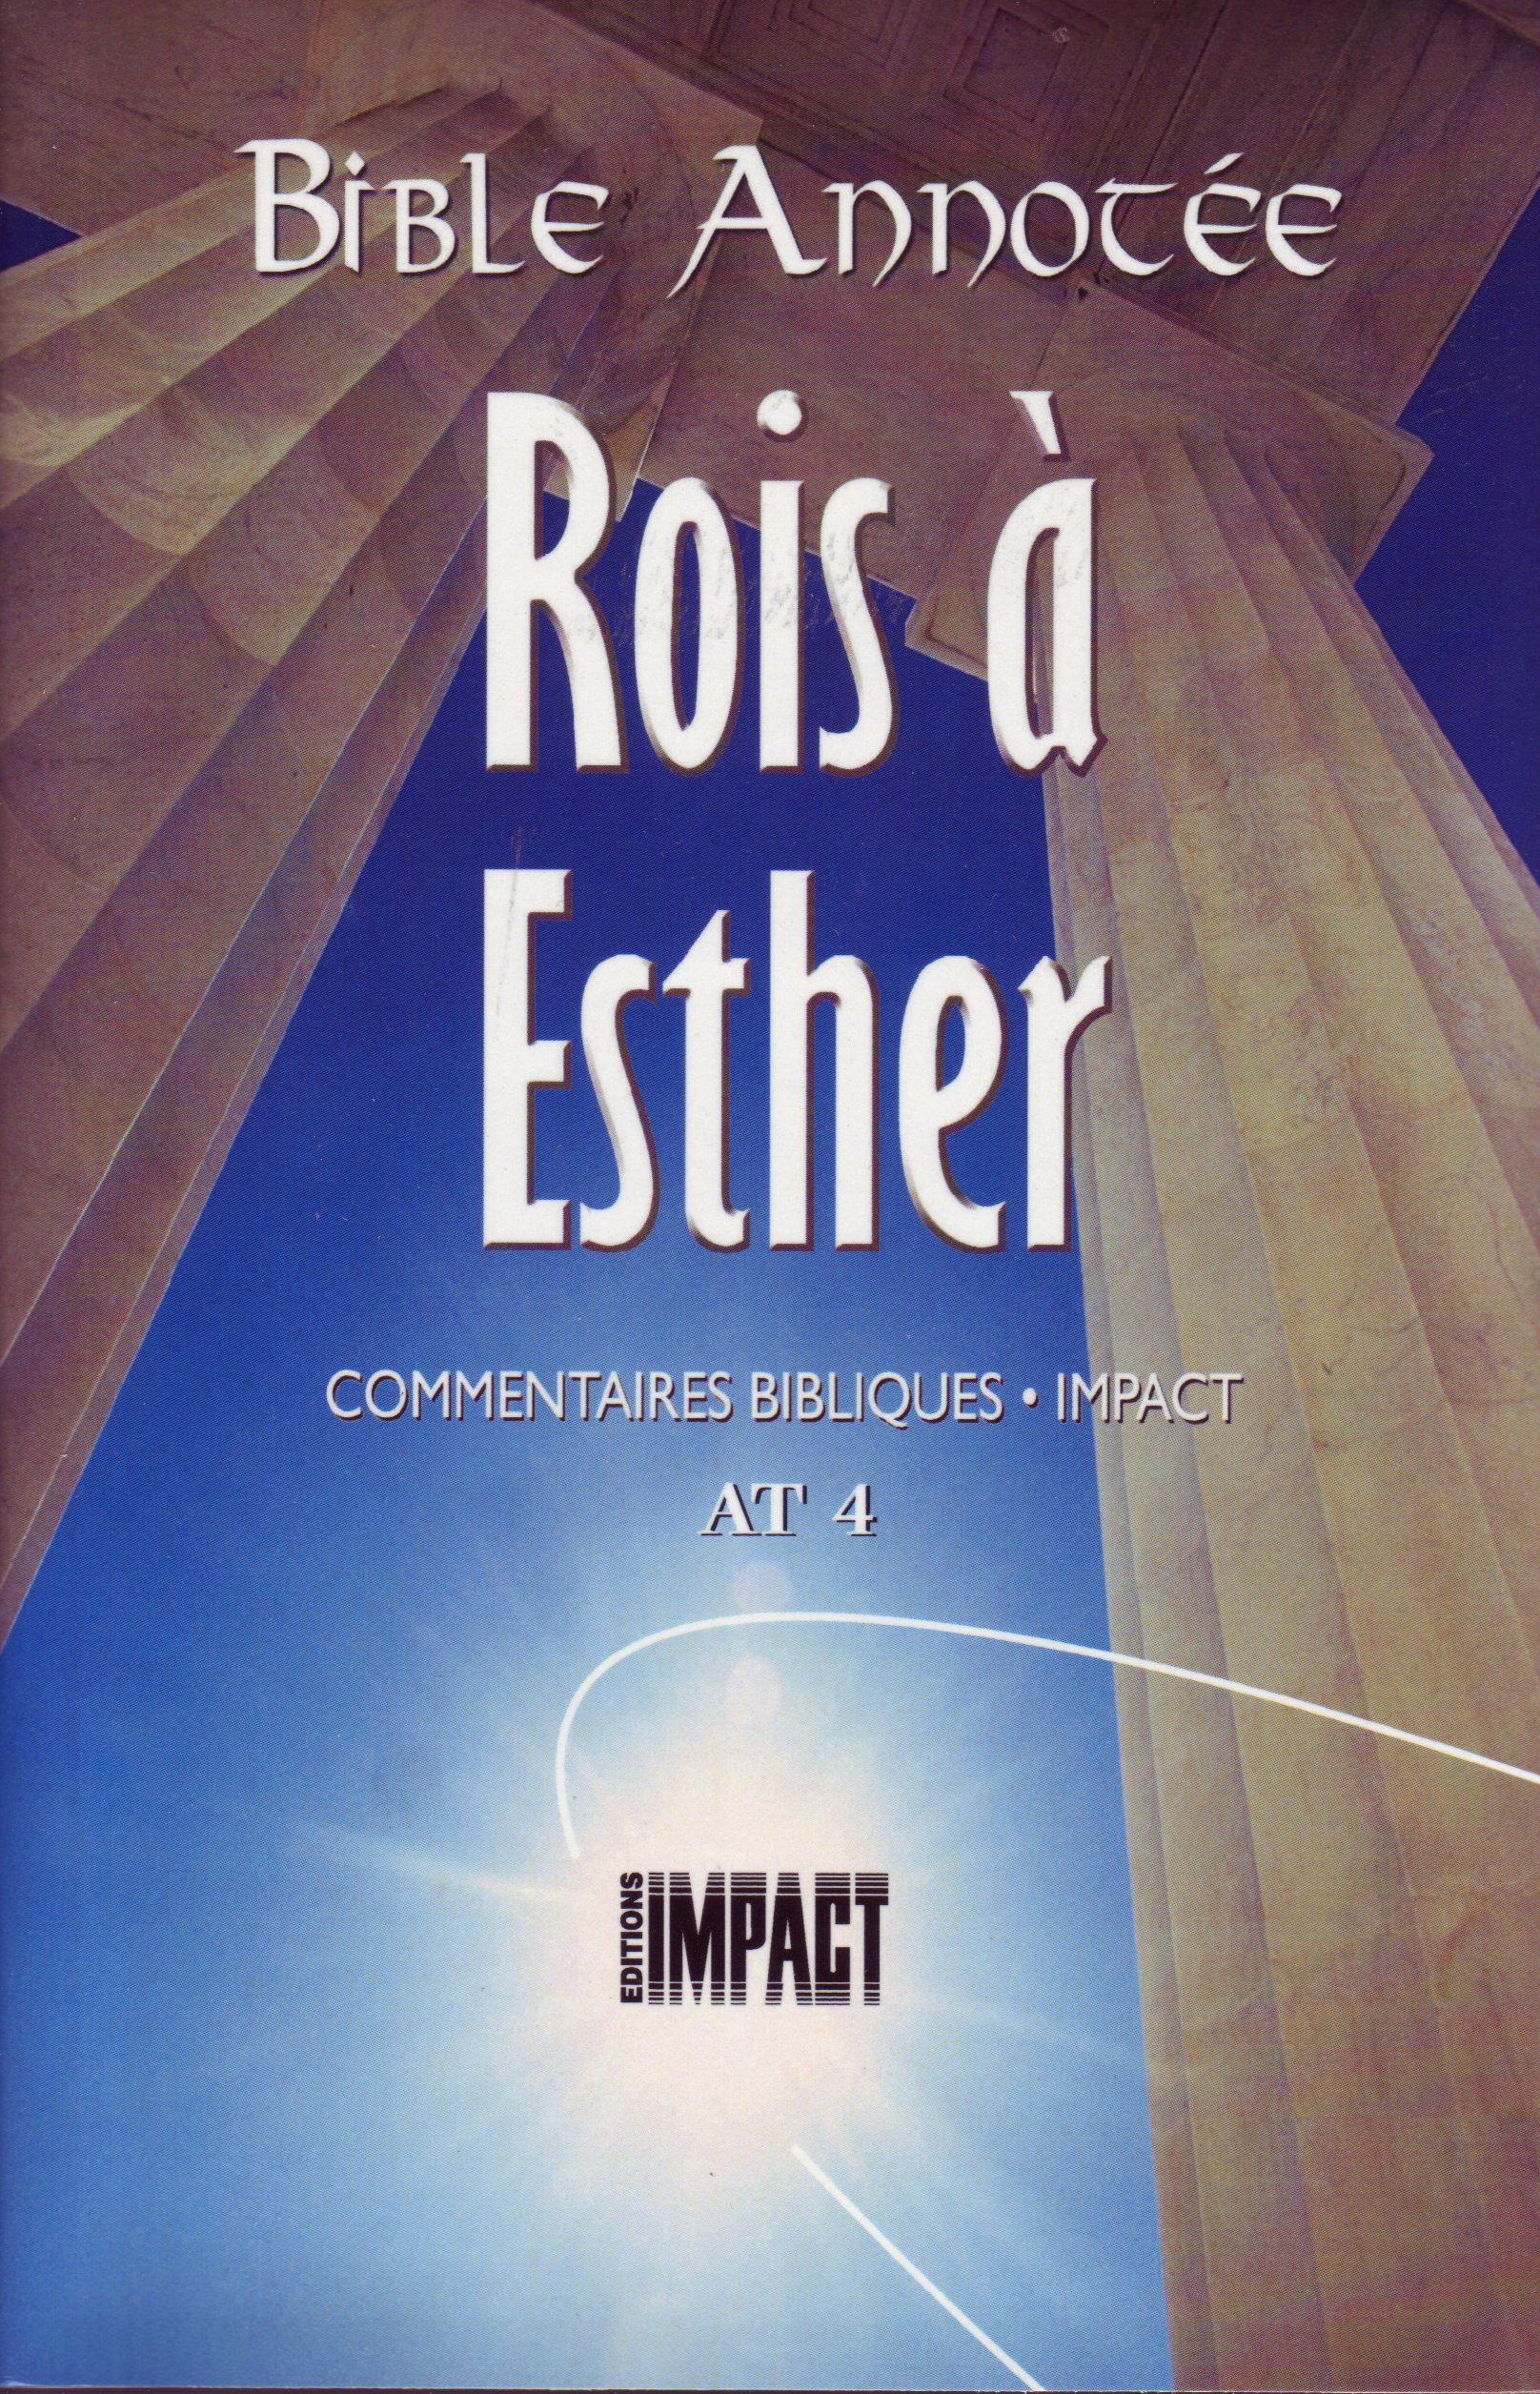 Bible annotée - Rois, Esther (La) - Commentaires bibliques Impact AT 4